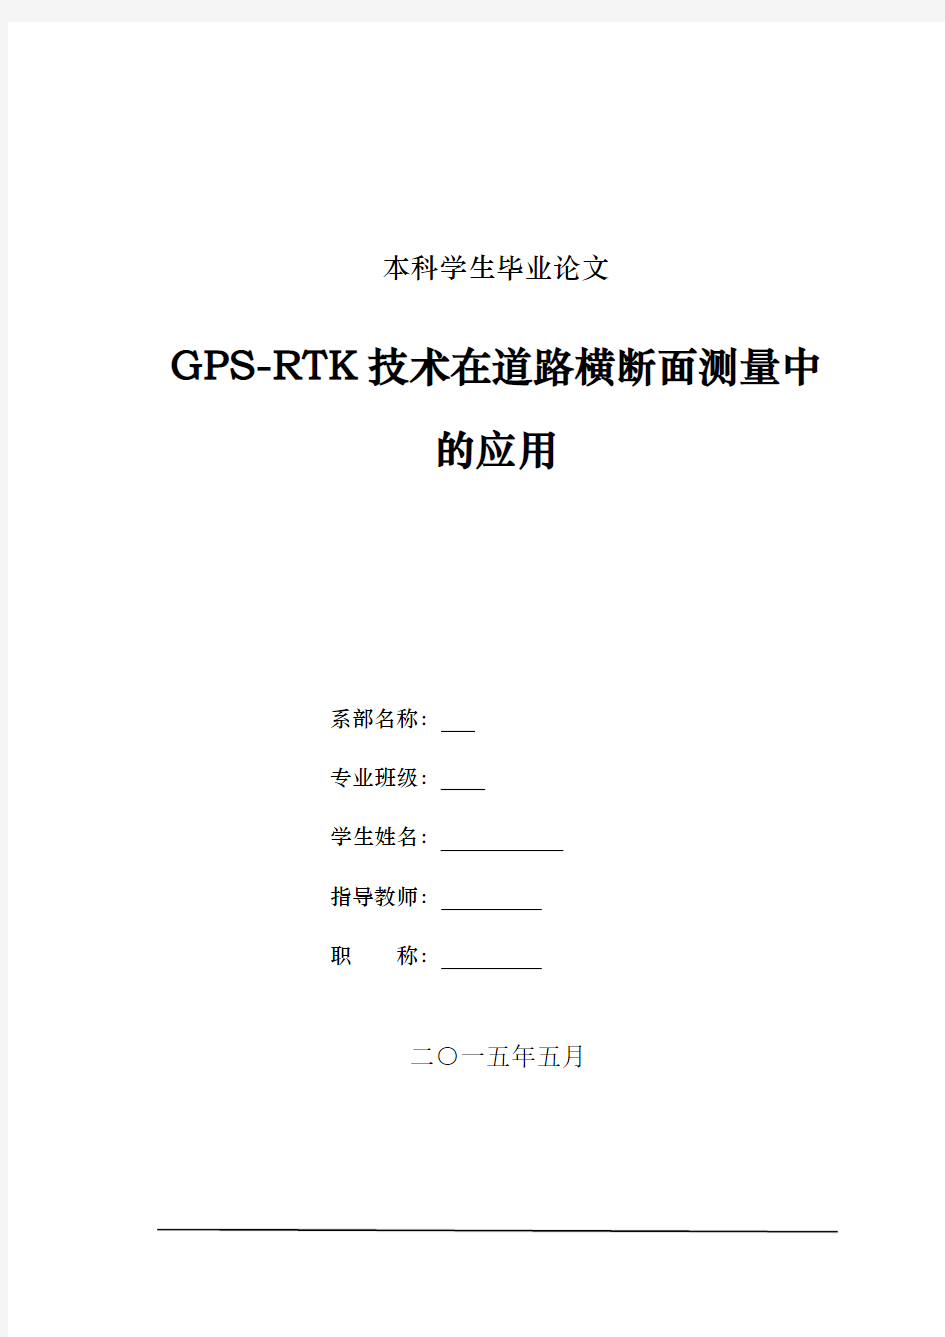 GPS-RTK技术在道路横断面测量中的应用